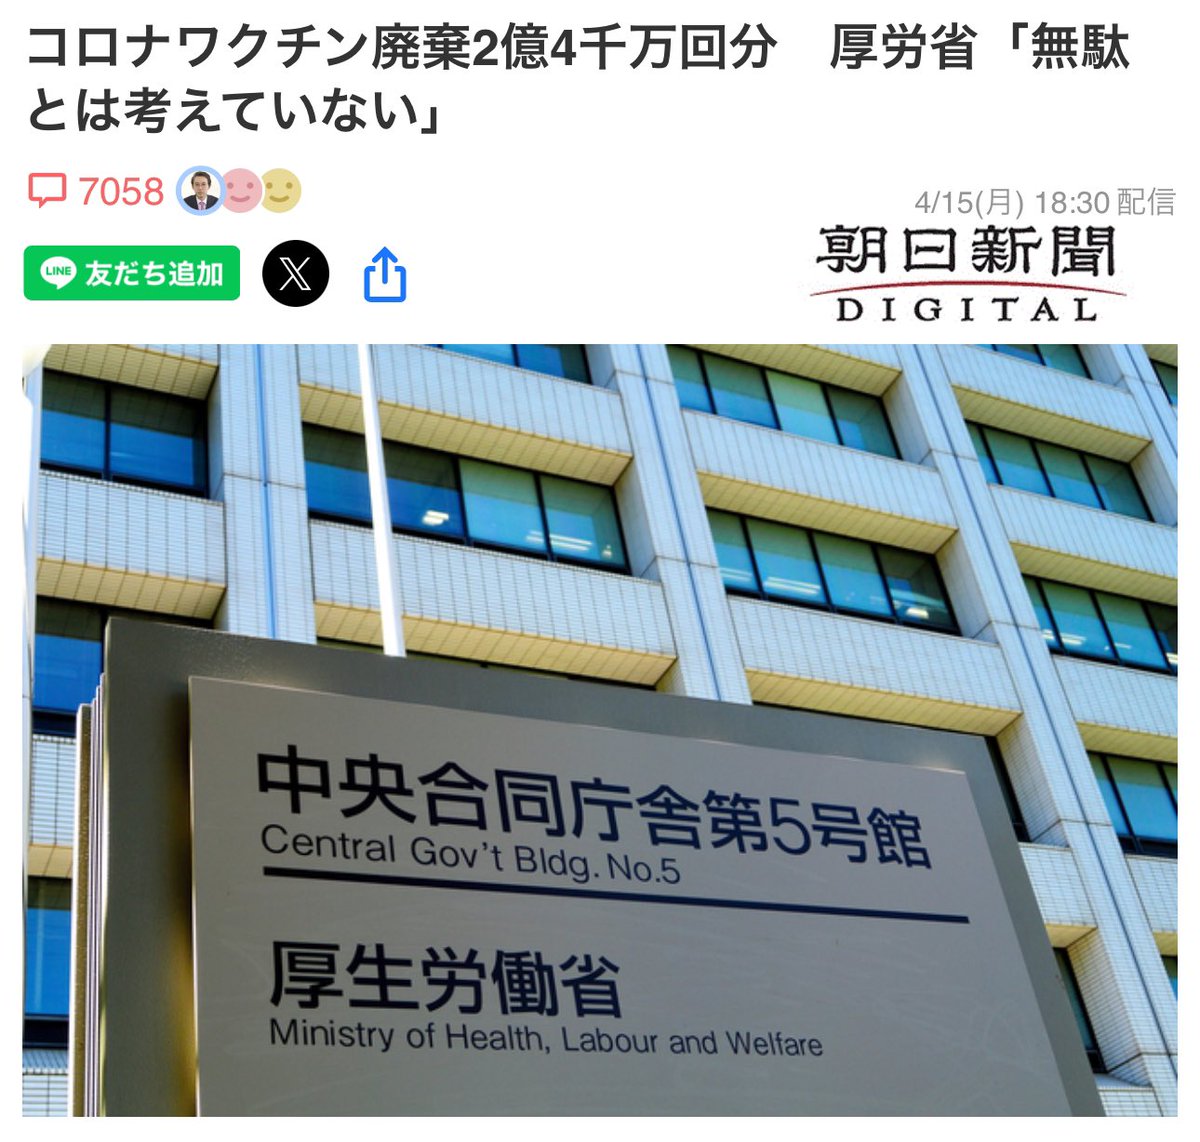 ワクチン最終処分場として名乗りを挙げた日本政府に「無駄」という二文字は無いのだろう